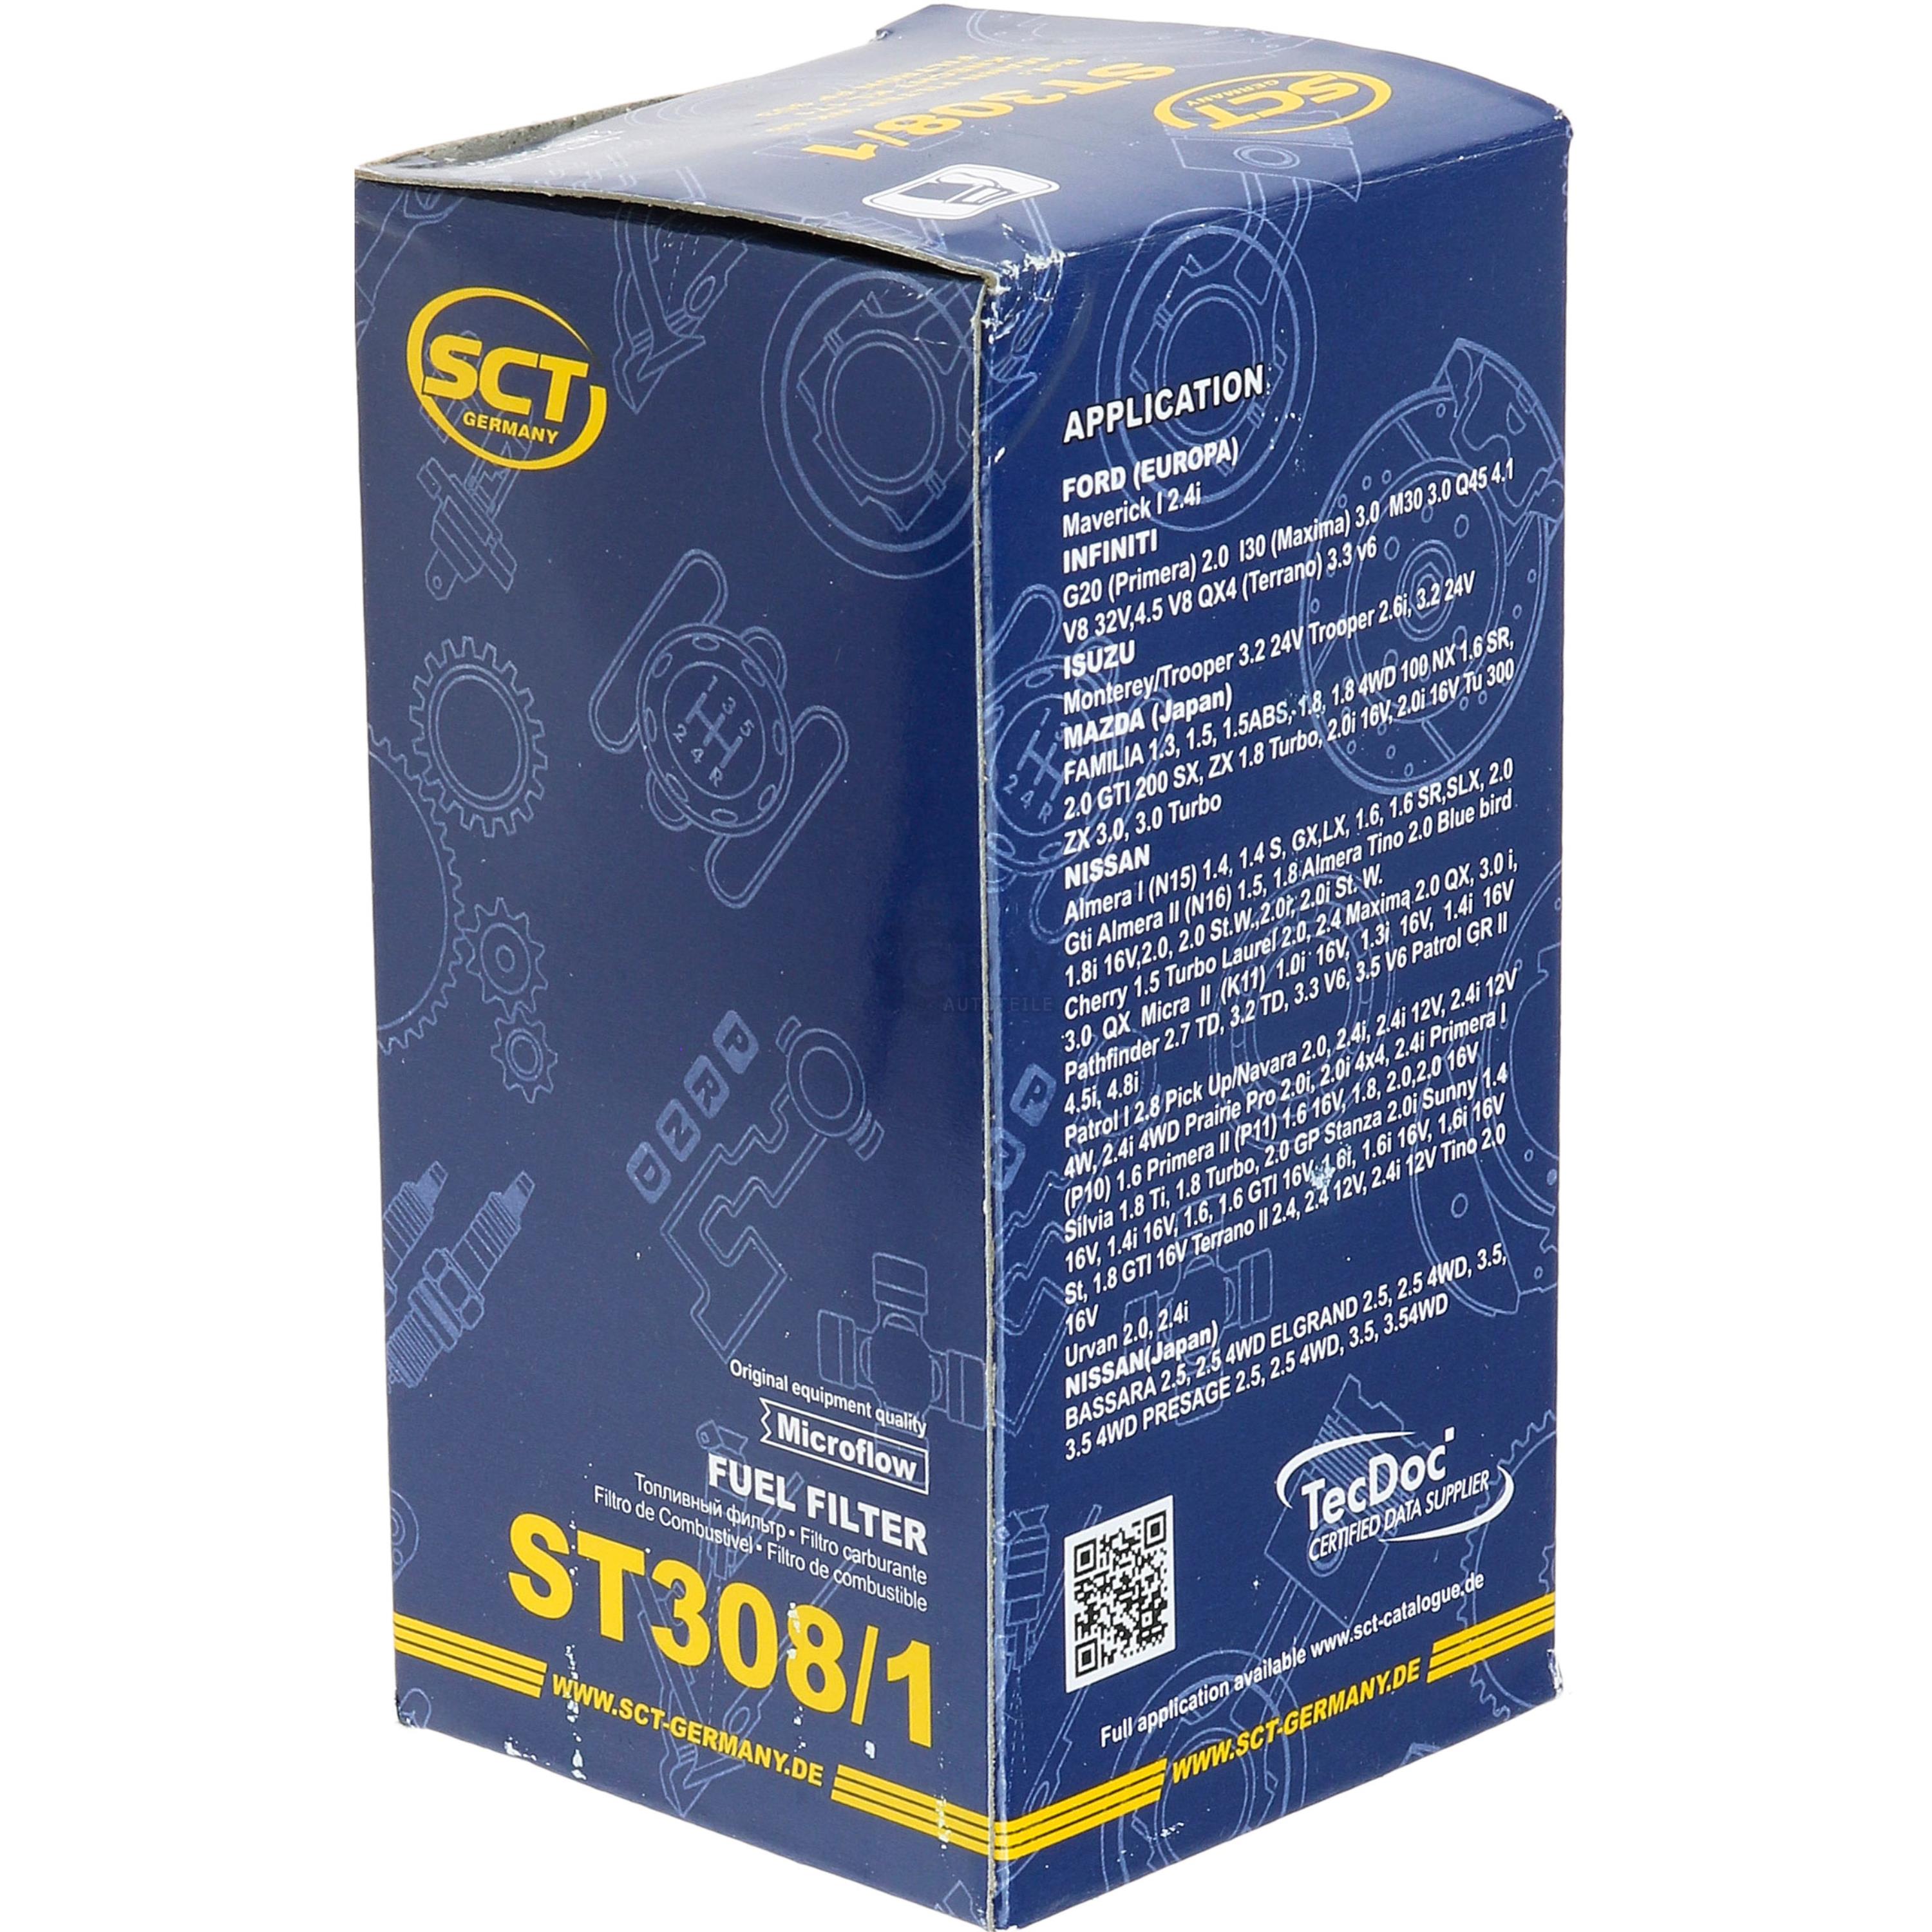 SCT Kraftstofffilter ST 308/1 Fuel Filter